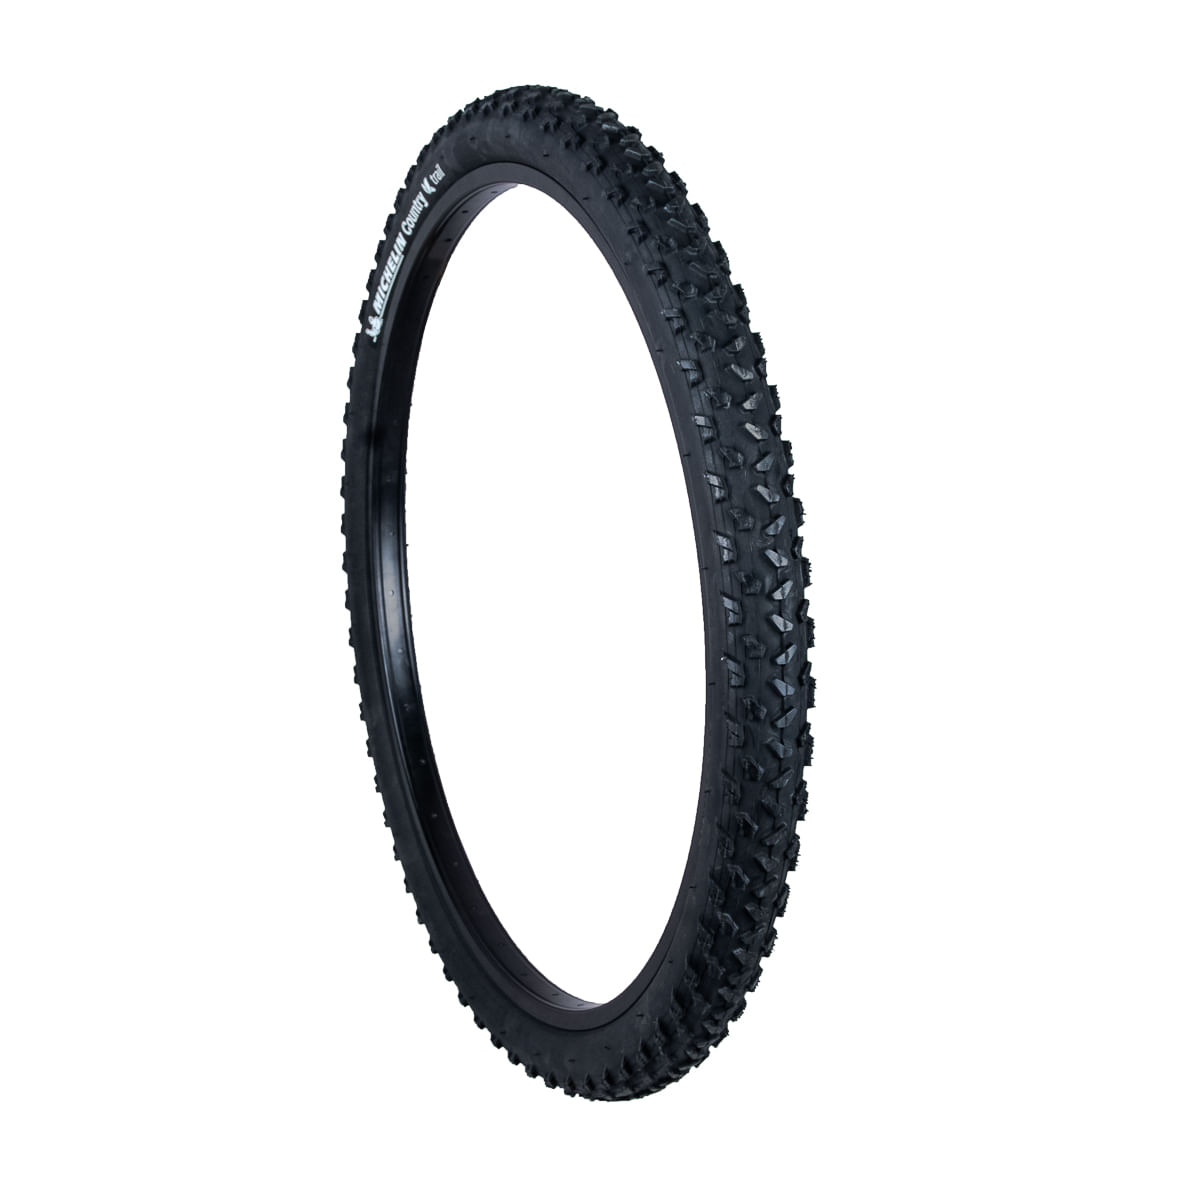 Cubiertas Bicicleta Michelin – Neumáticos de carretera y MTB Michelin en